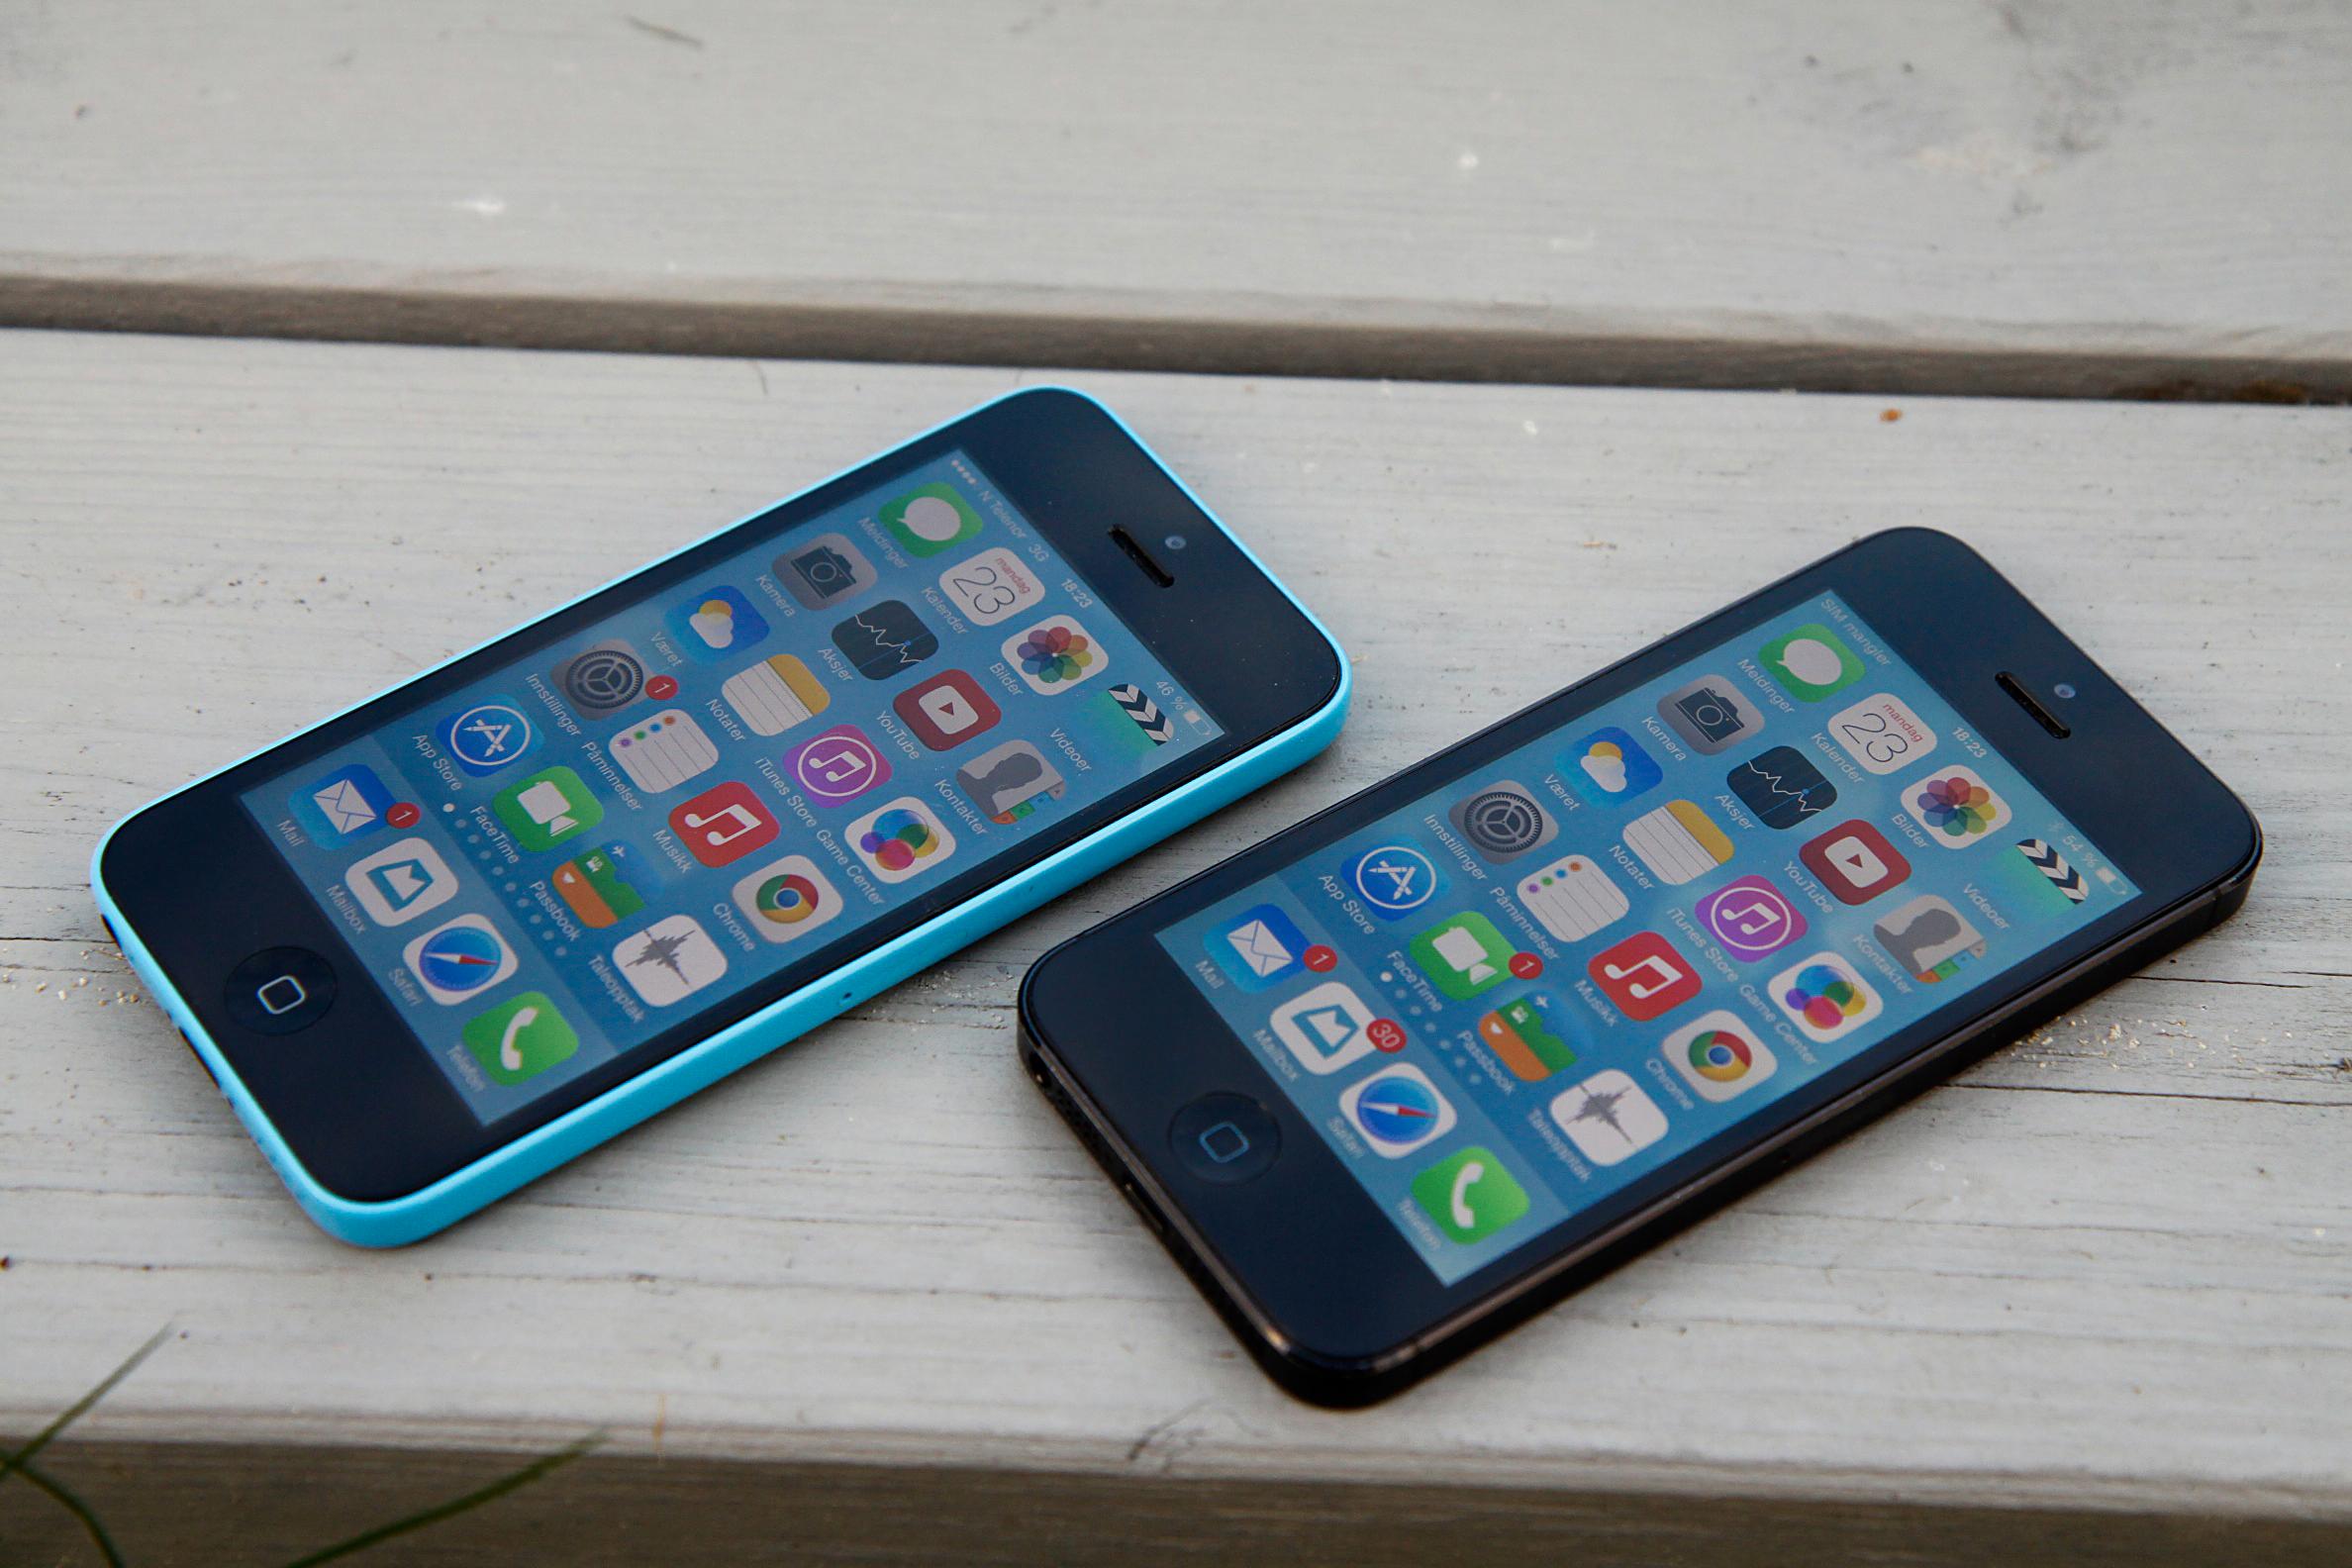 iPhone 5C (til venstre) og iPhone 5. Foto: Kurt Lekanger, Amobil.no